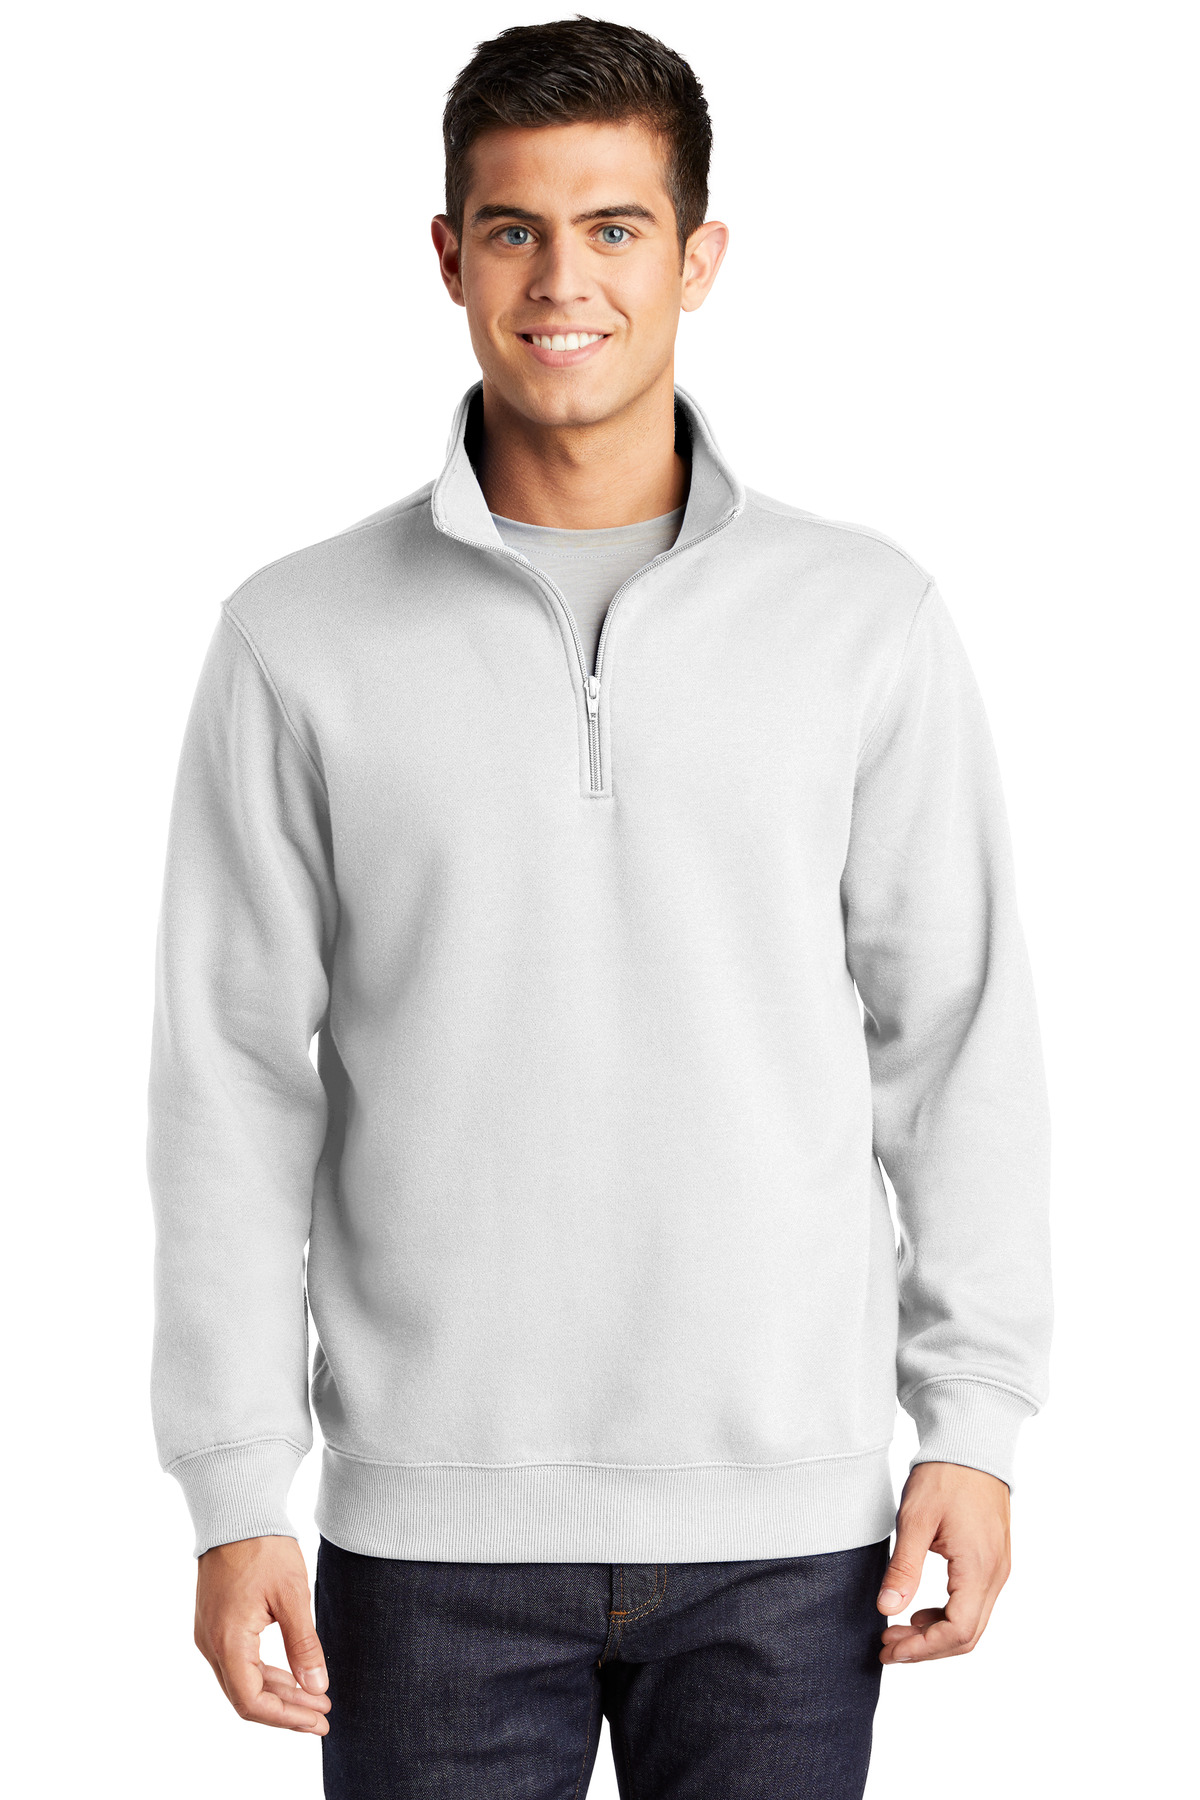 Sport-Tek 1/4-Zip Sweatshirt. St253 | eBay